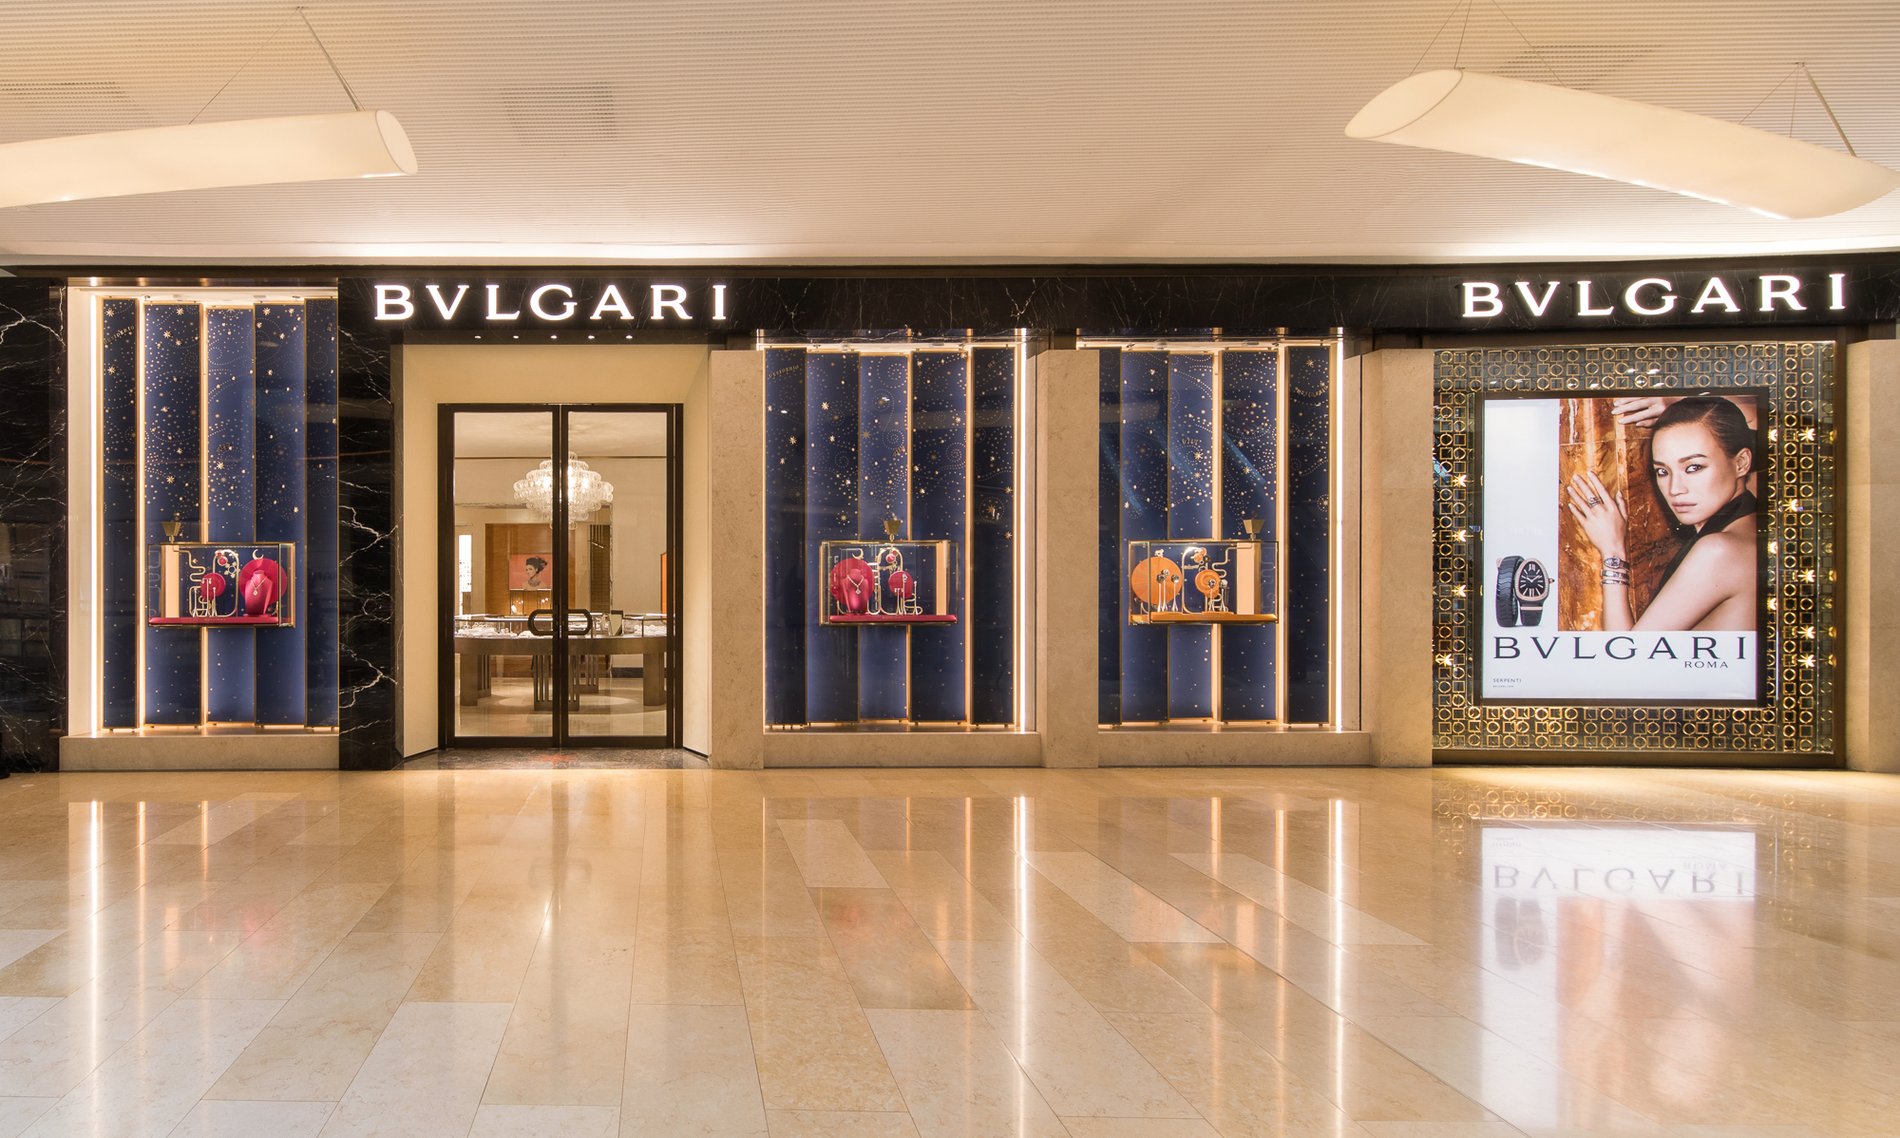 BVLGARI | Fine Italian Jewellery, Watches & Luxury Goods in Guangzhou ...